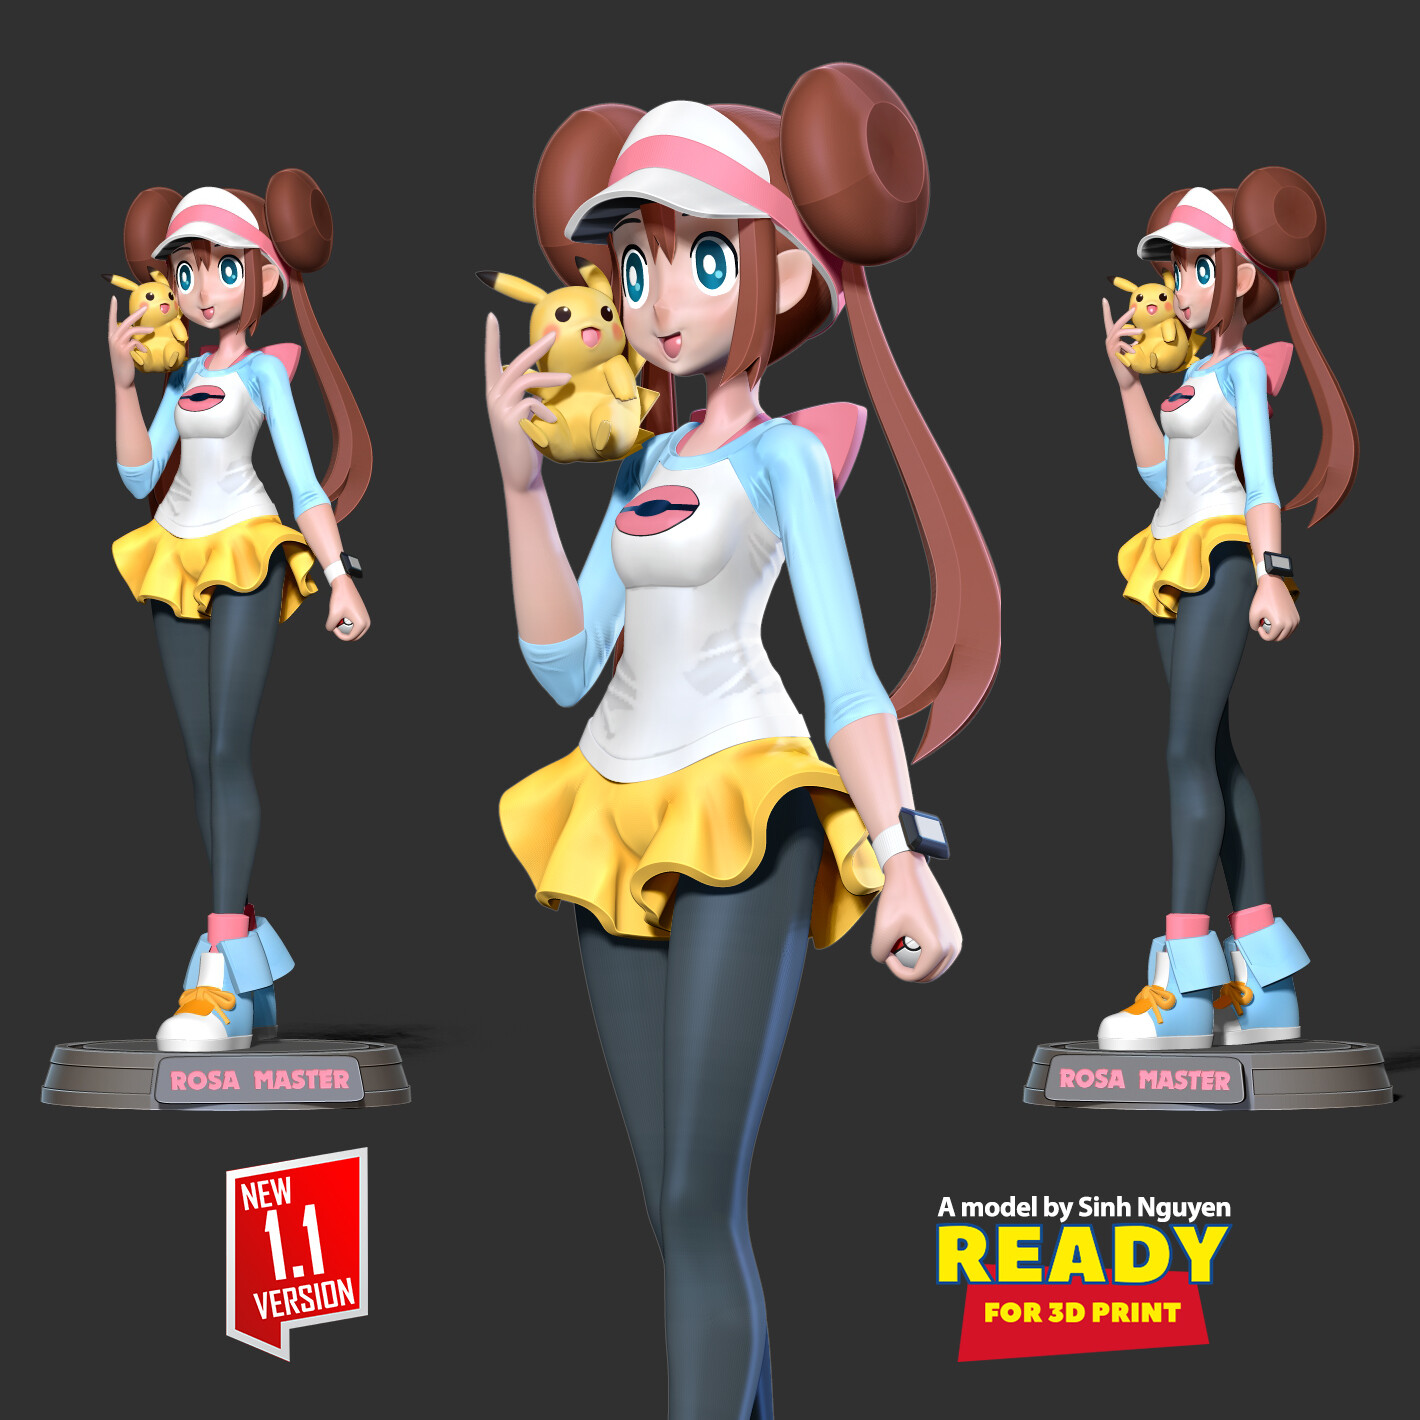 Eevee Girl - Pokemon Fanart 3D Print Model by Sinh Nguyen